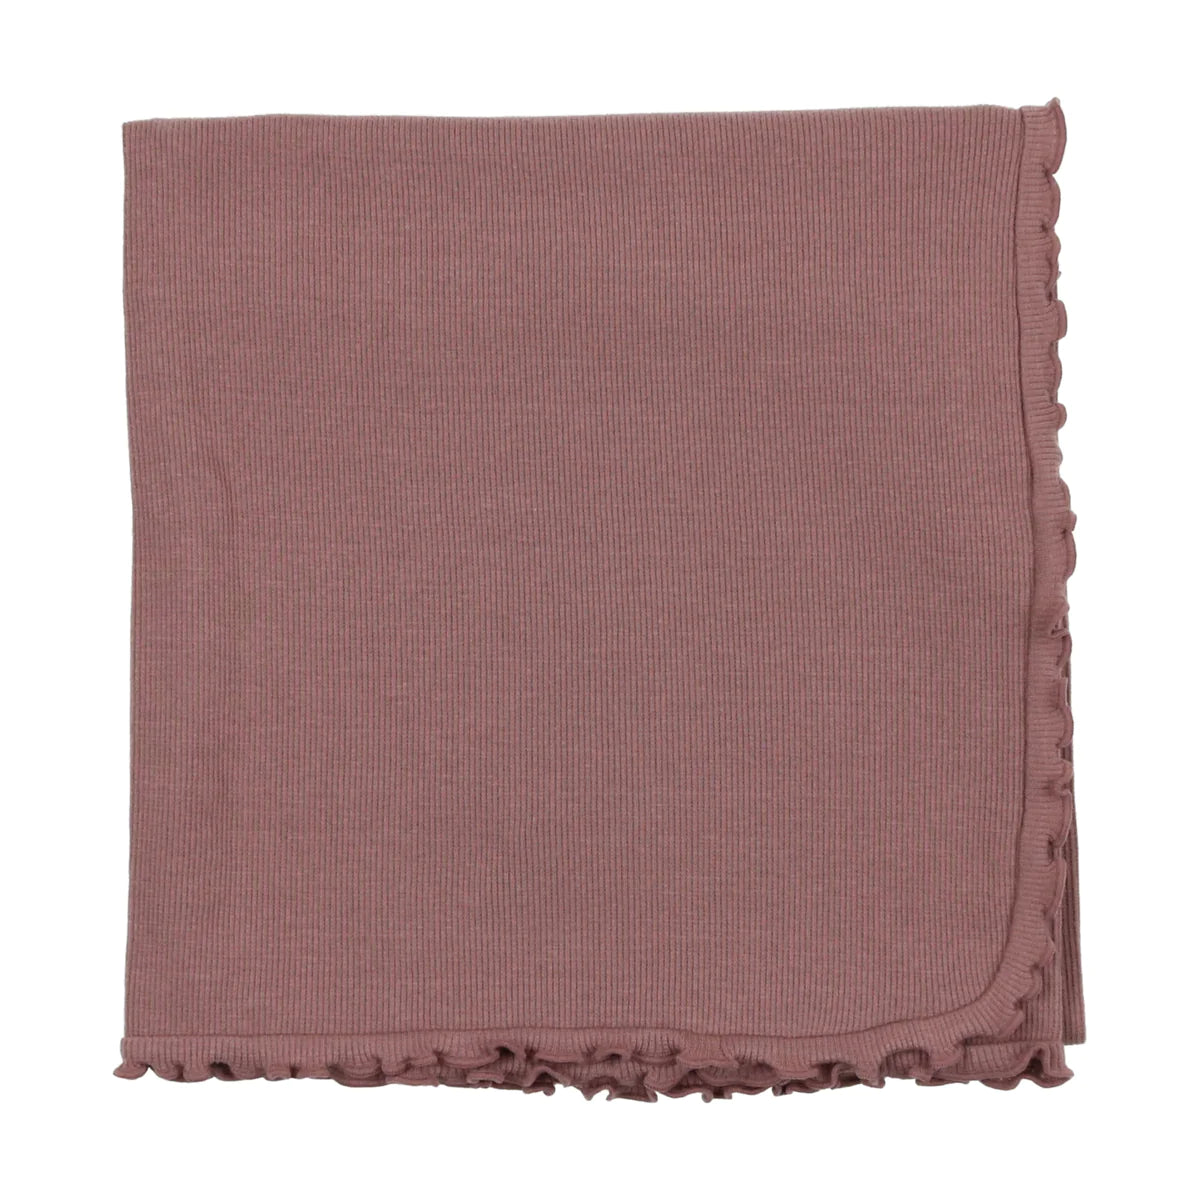 Assorted Receiving Blanket- Cotton